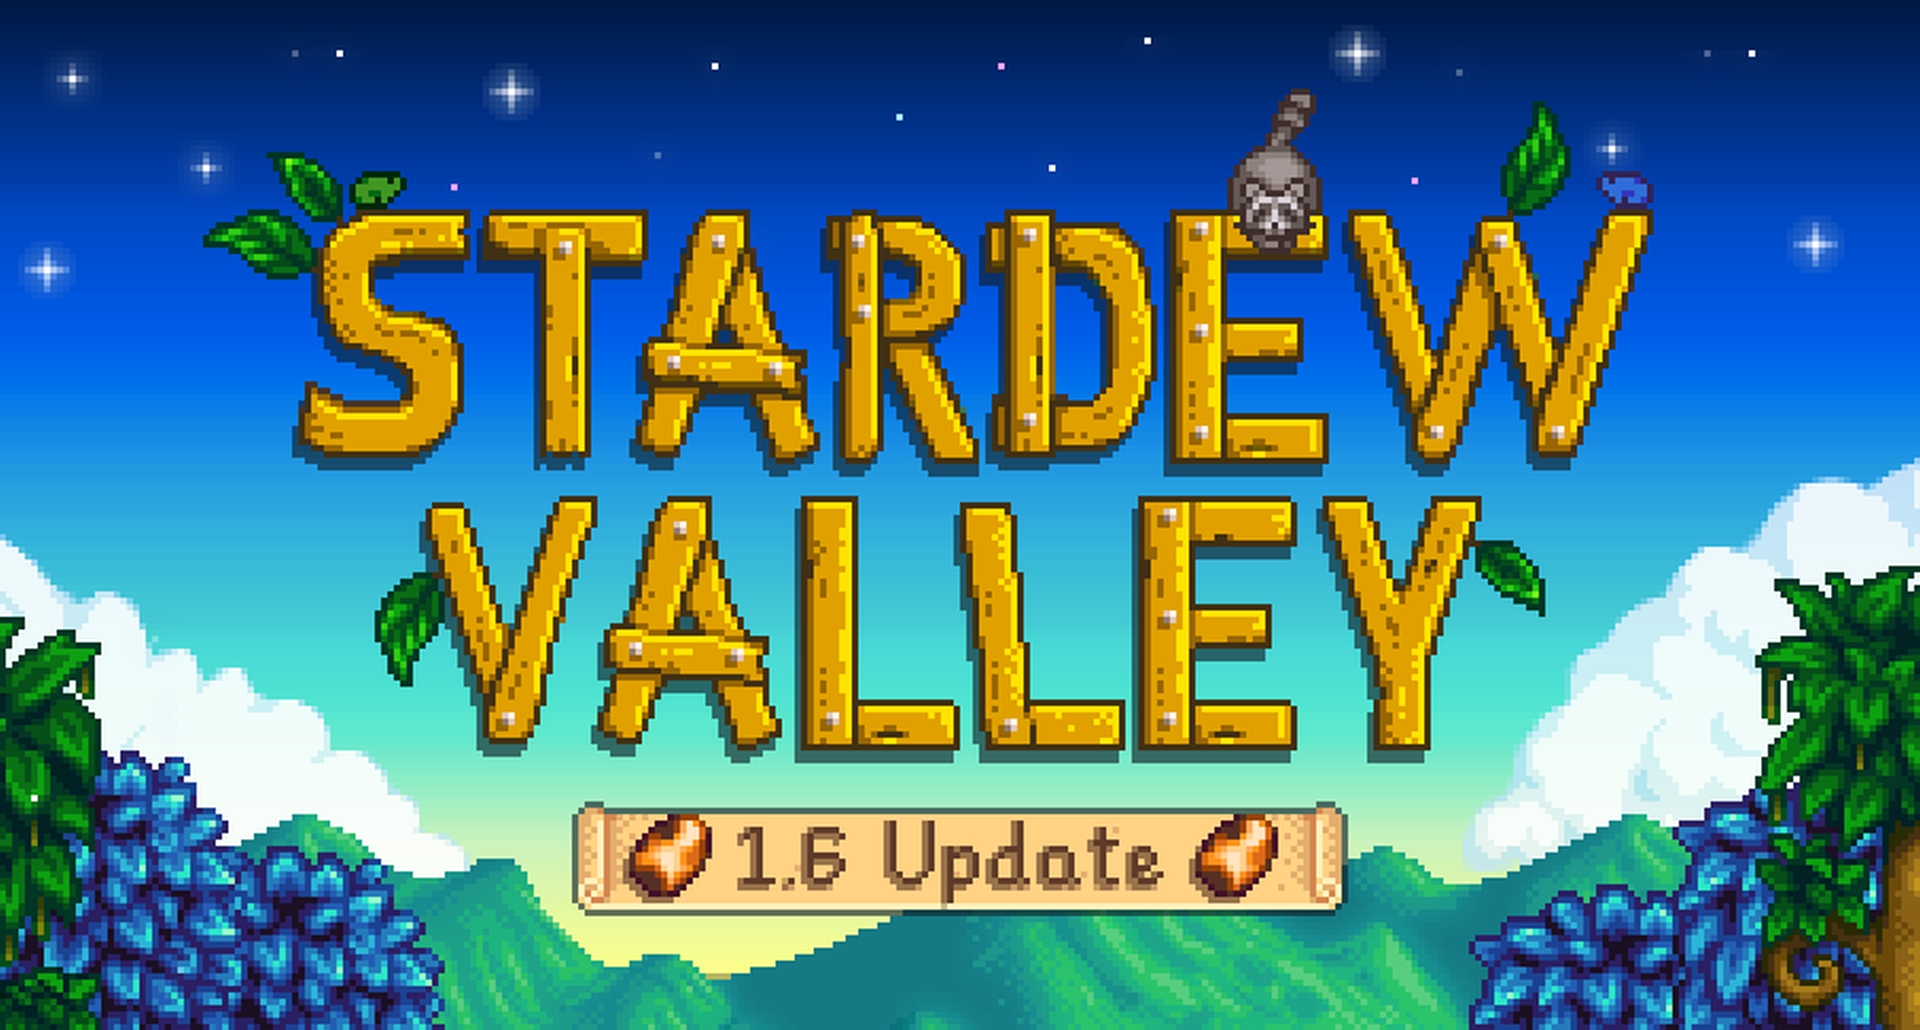 Stardew Valley uppdatering 1.6 släpps den 16 mars för PC, meddelar utvecklaren